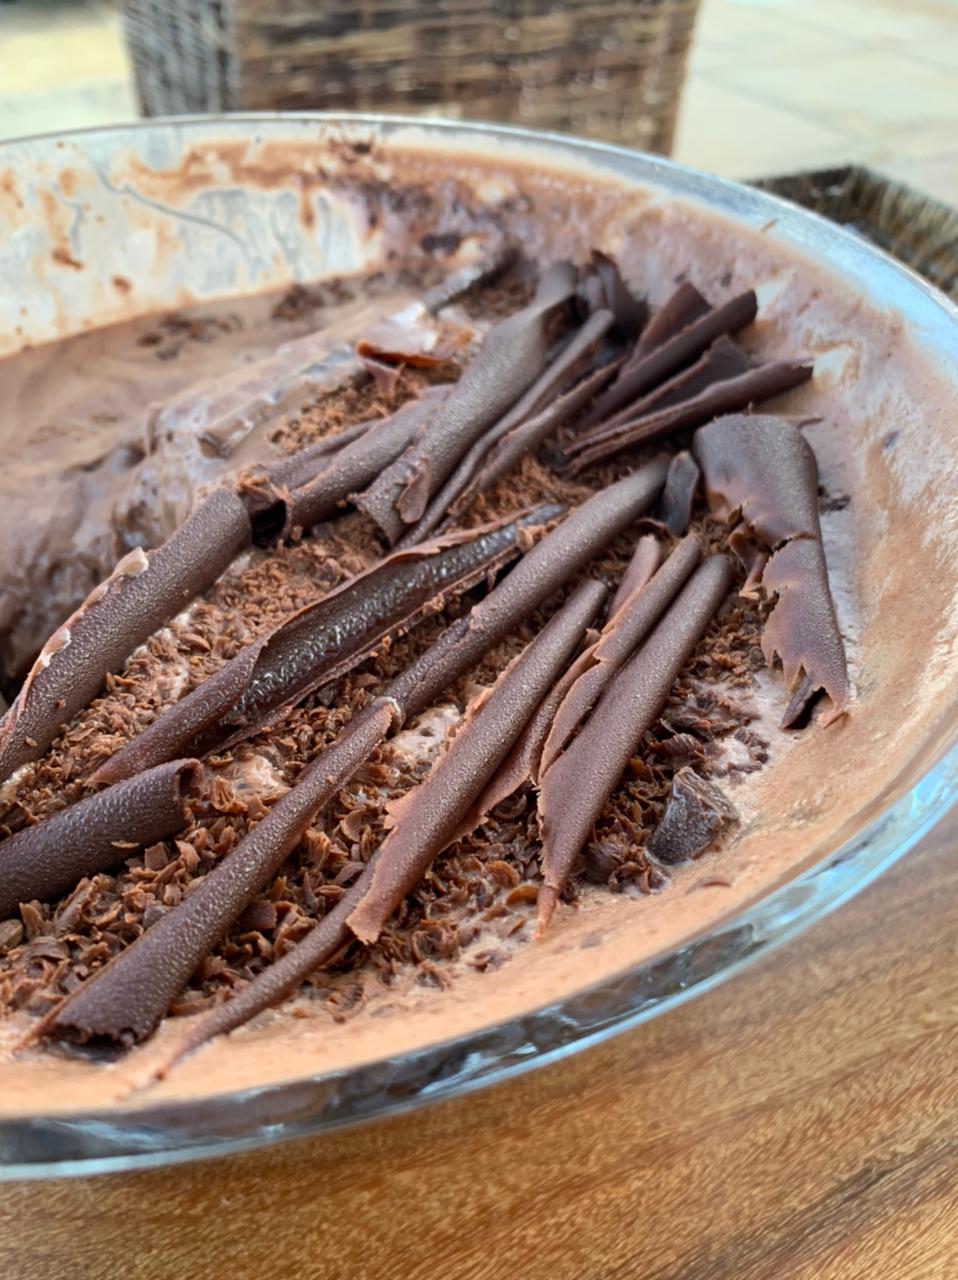 A mousse de chocolate amargo, outra receita tradicional da casa de Mário